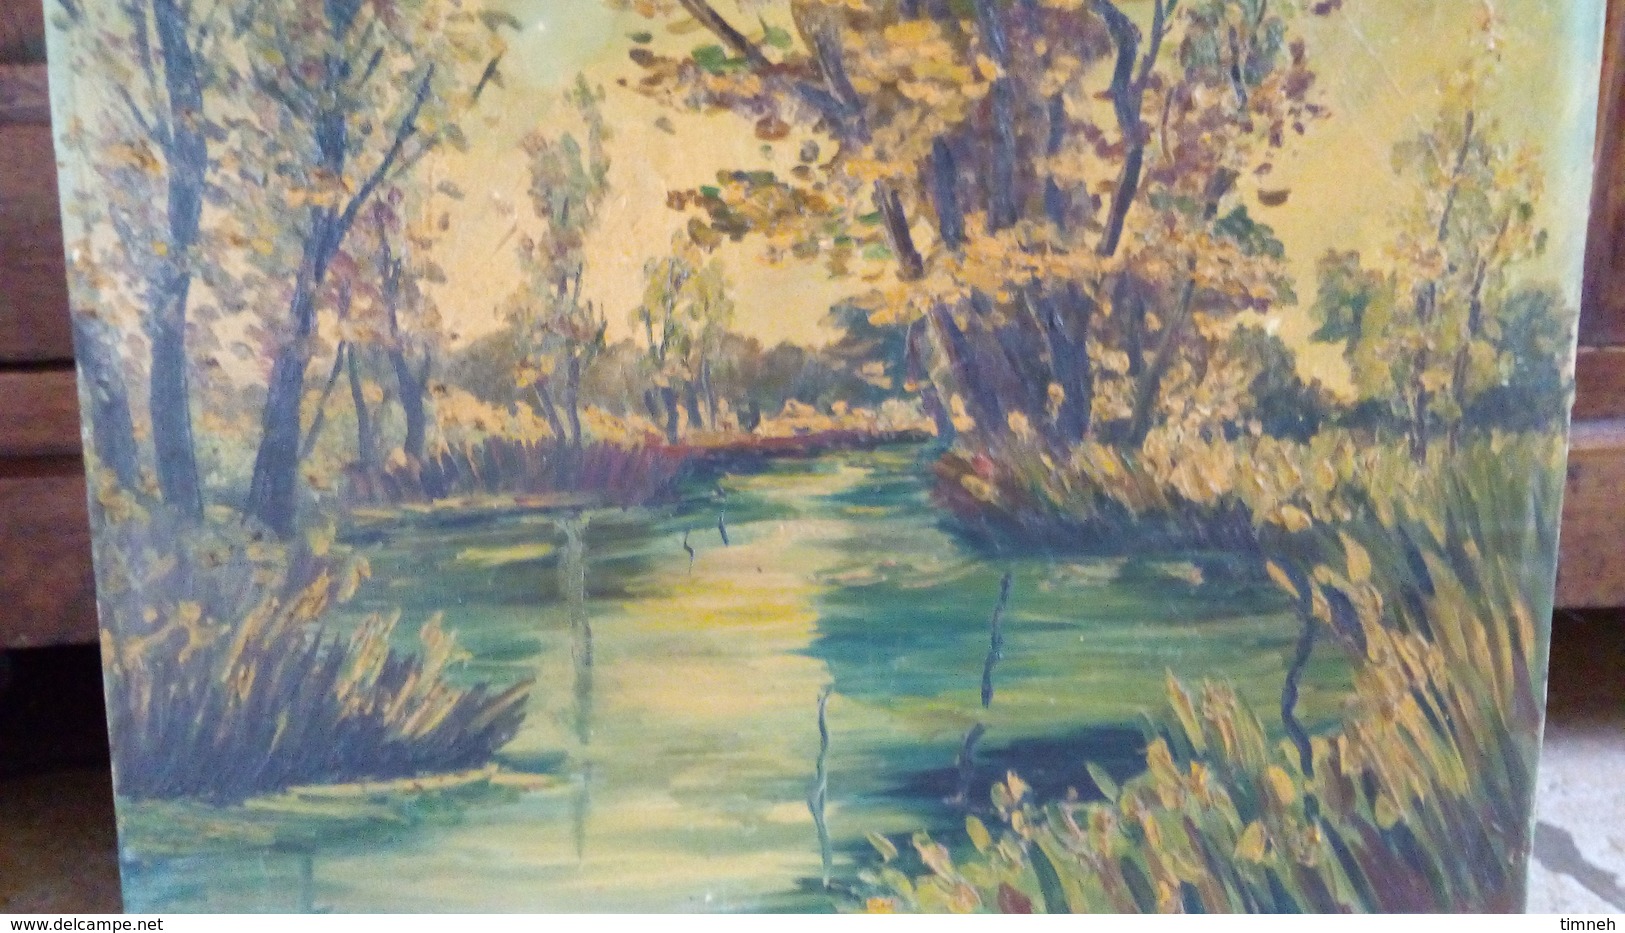 Huile sur toile - Paysage de campagne - bord de l'eau - rivière et arbres - non signé vers 1960 - 46cmx38cm -